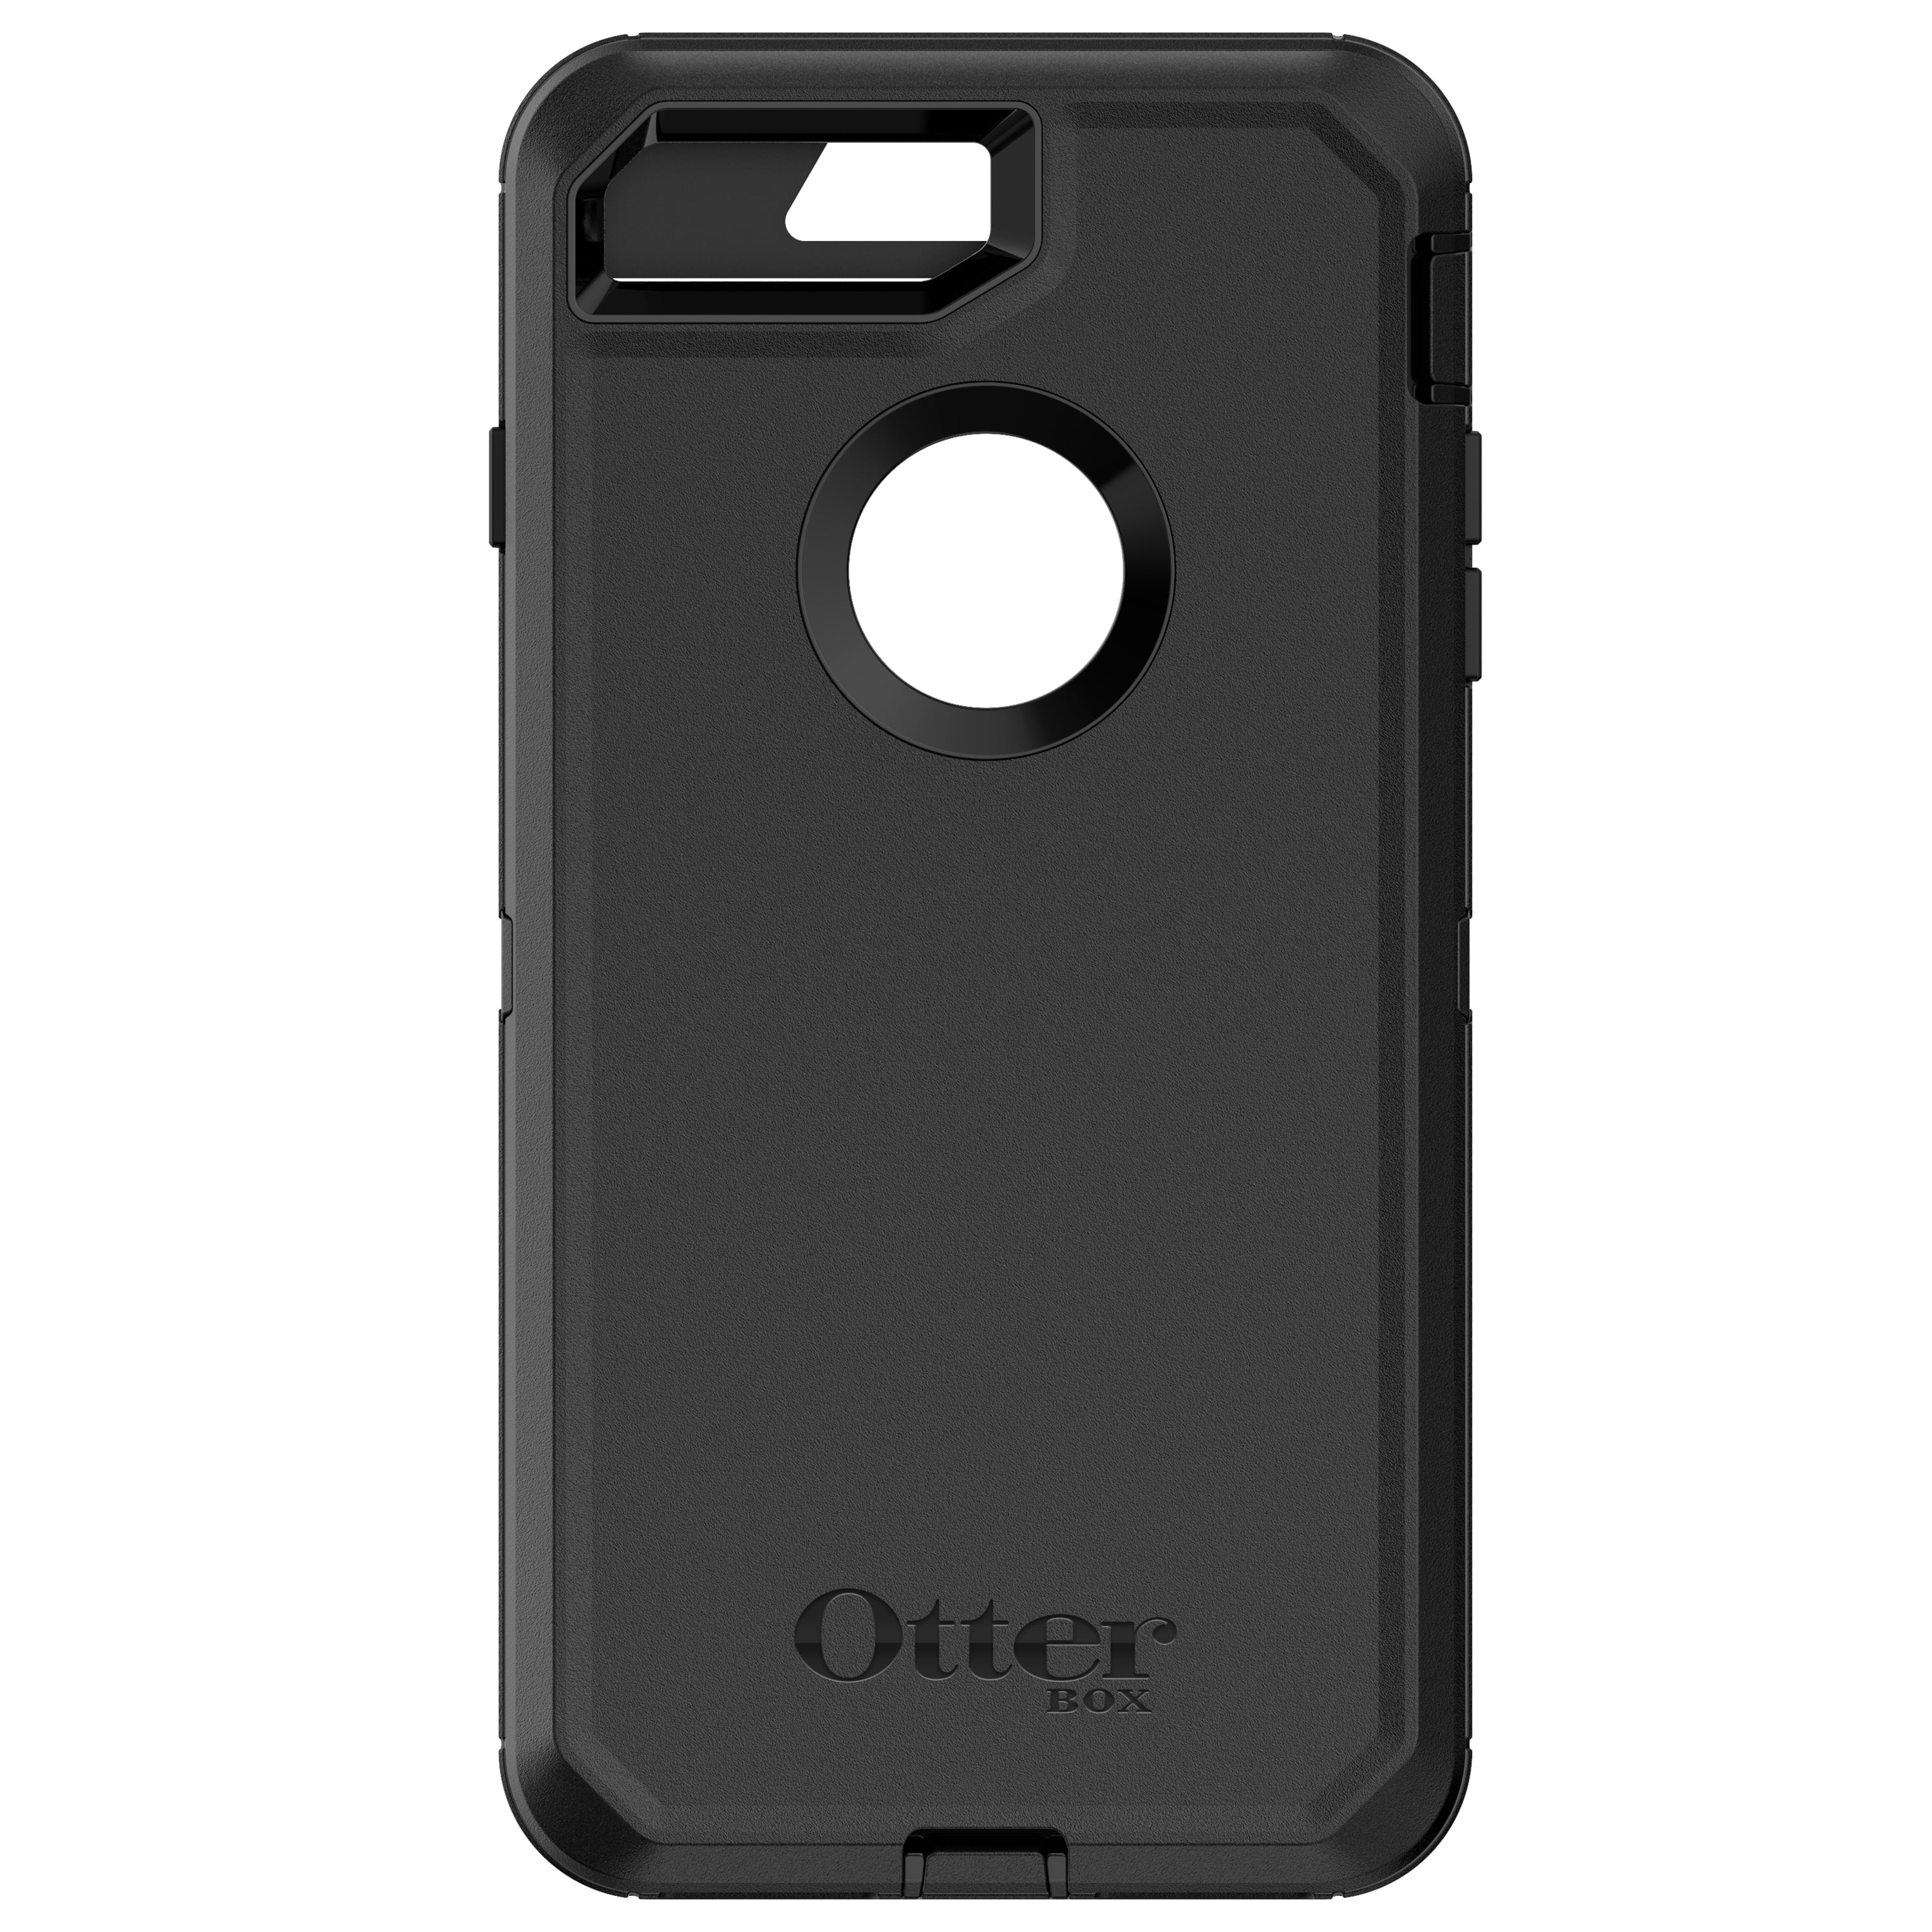 OtterBox Defender Series Case for iPhone 8 Plus & iPhone 7 Plus, Black